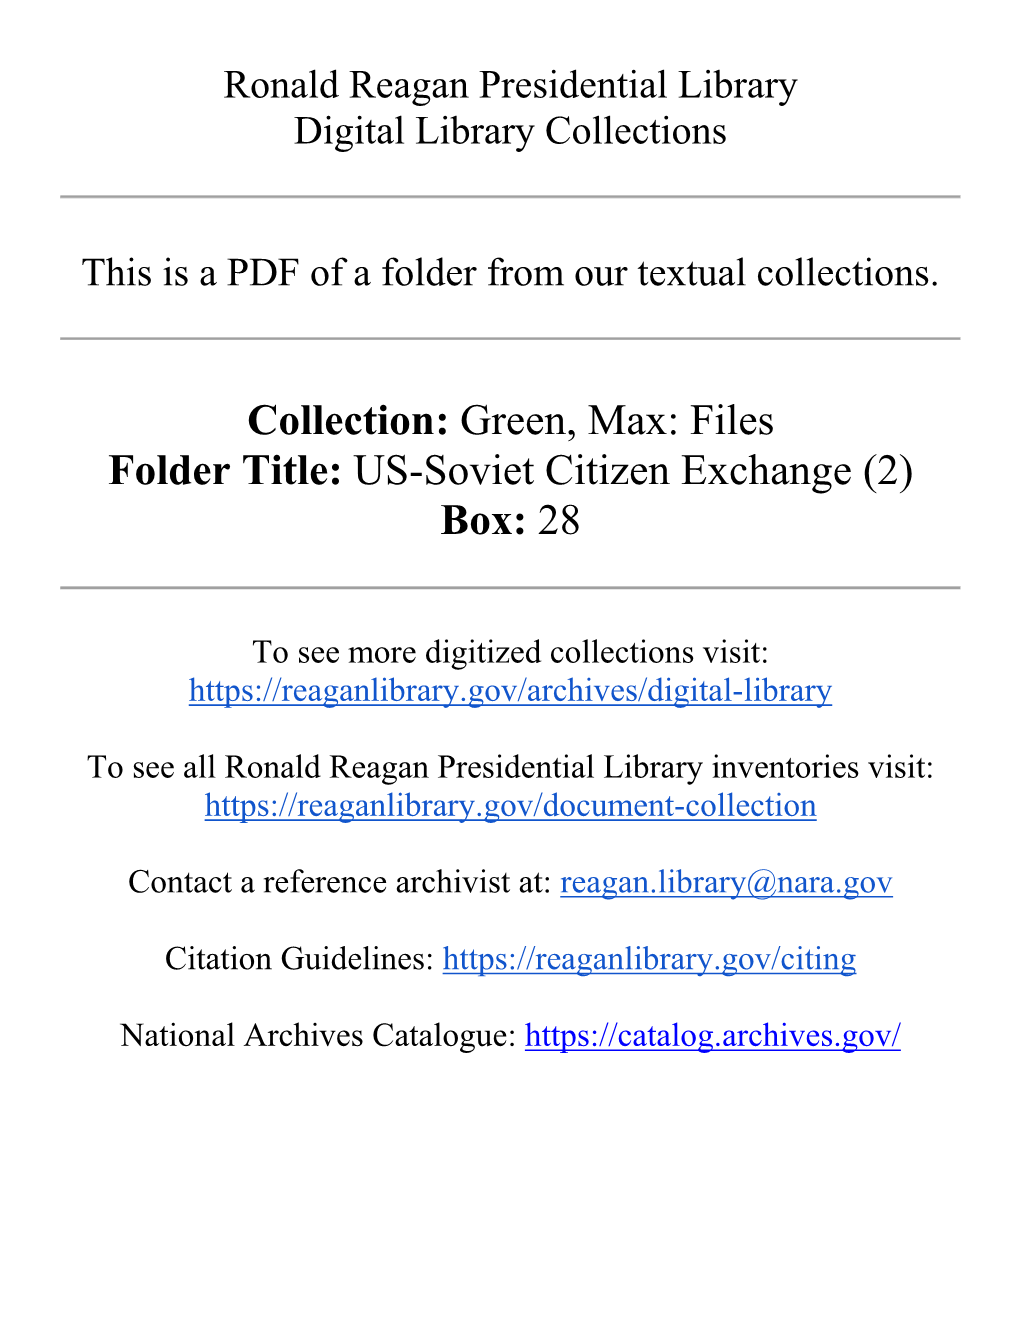 US-Soviet Citizen Exchange (2) Box: 28